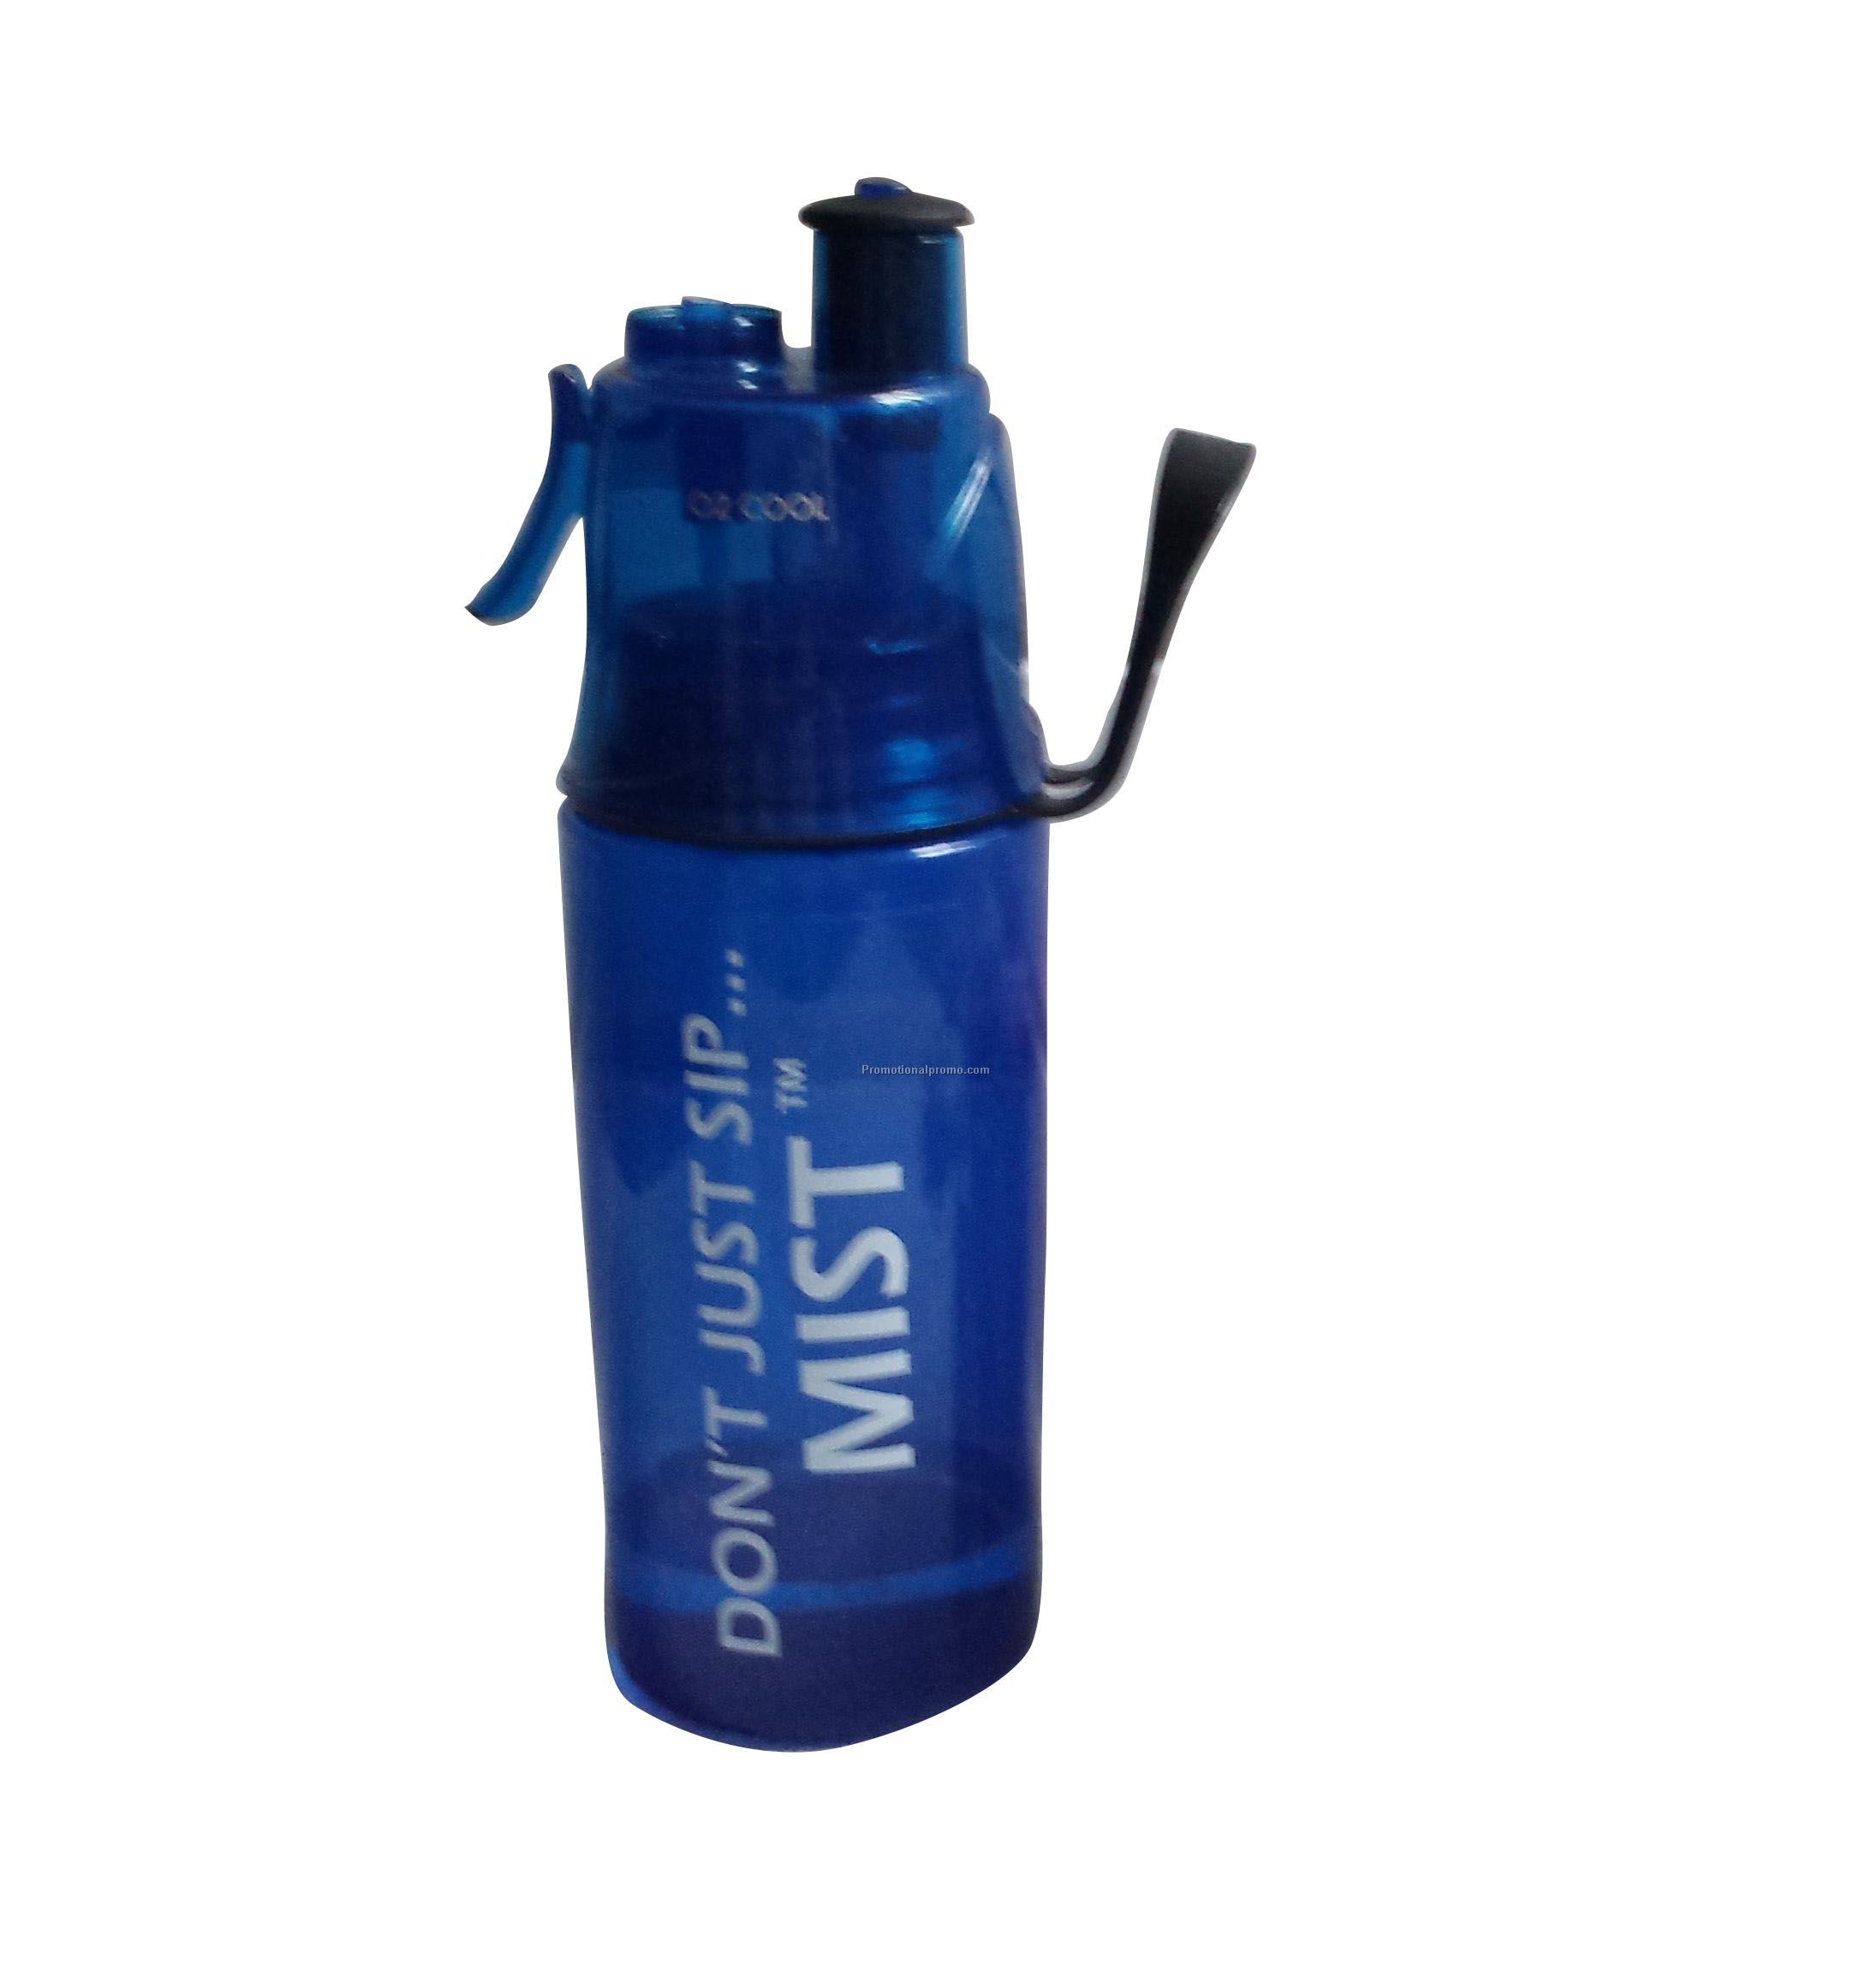 Spray pot sports bottle travel mug